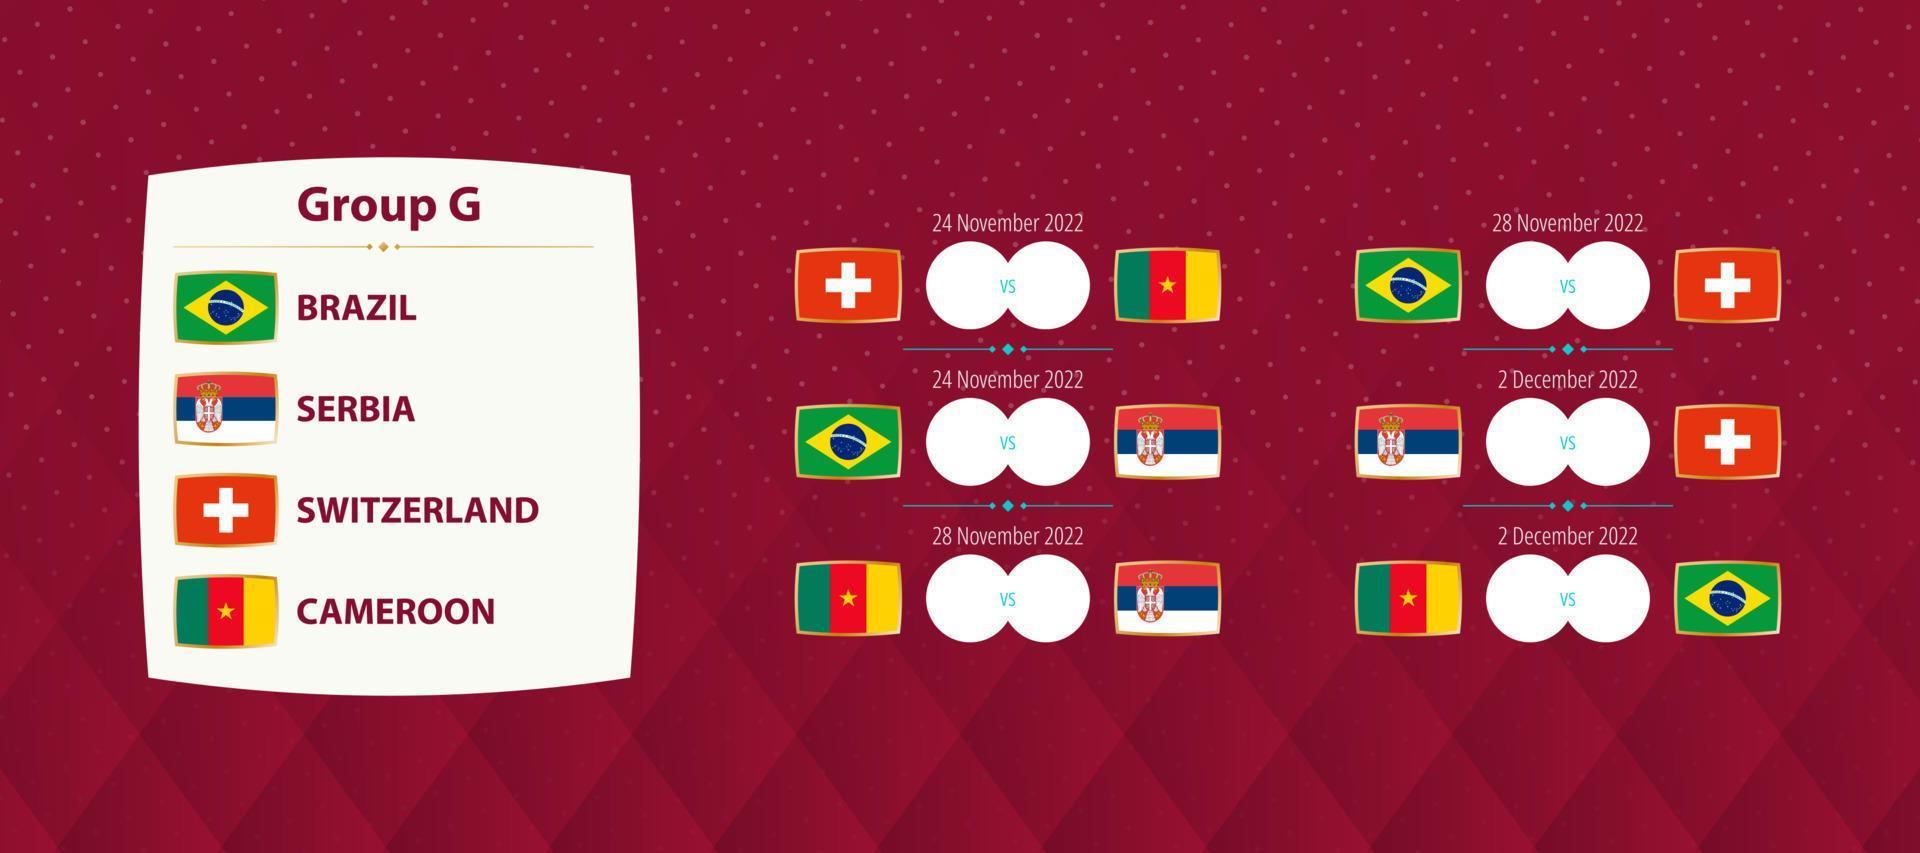 partidas do grupo g do torneio internacional de futebol, partidas da programação da seleção nacional de futebol para a competição de 2022. vetor